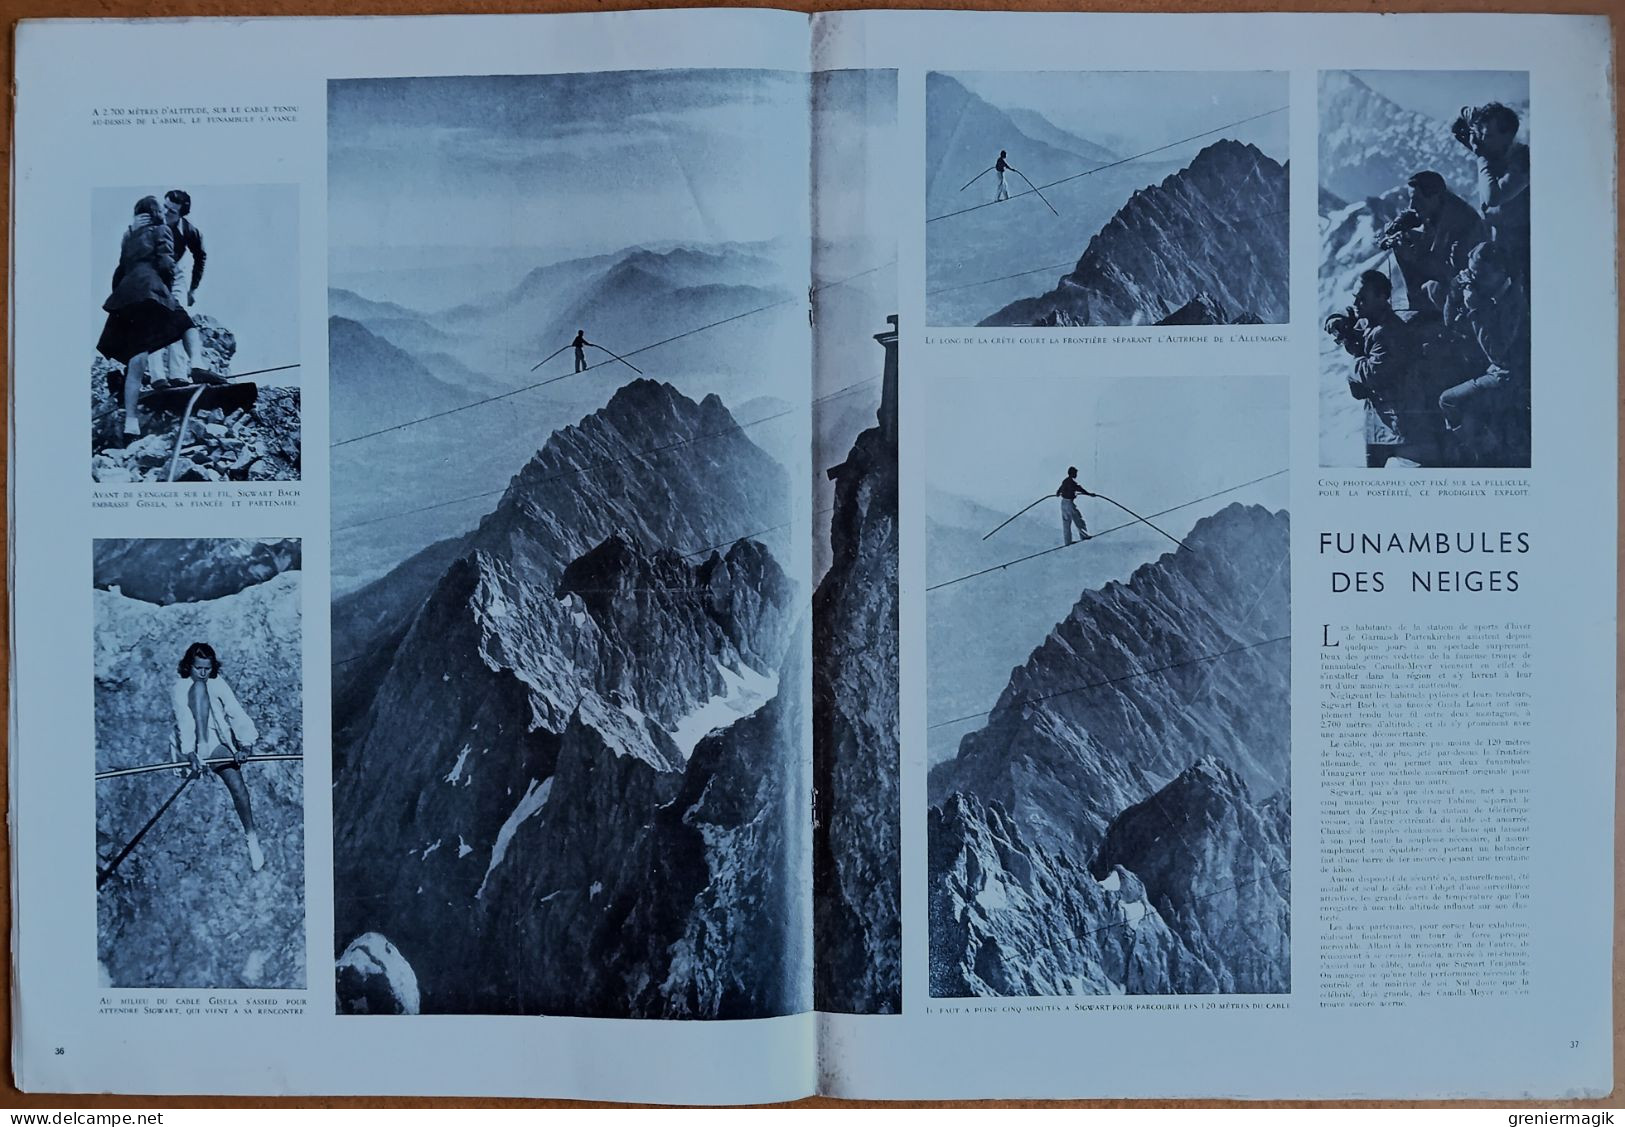 France Illustration N°145 10/07/1948 Le Fezzan/La Chine en armes/Sidérurgie/Funambule Garmisch/Finlande/L'art iranien